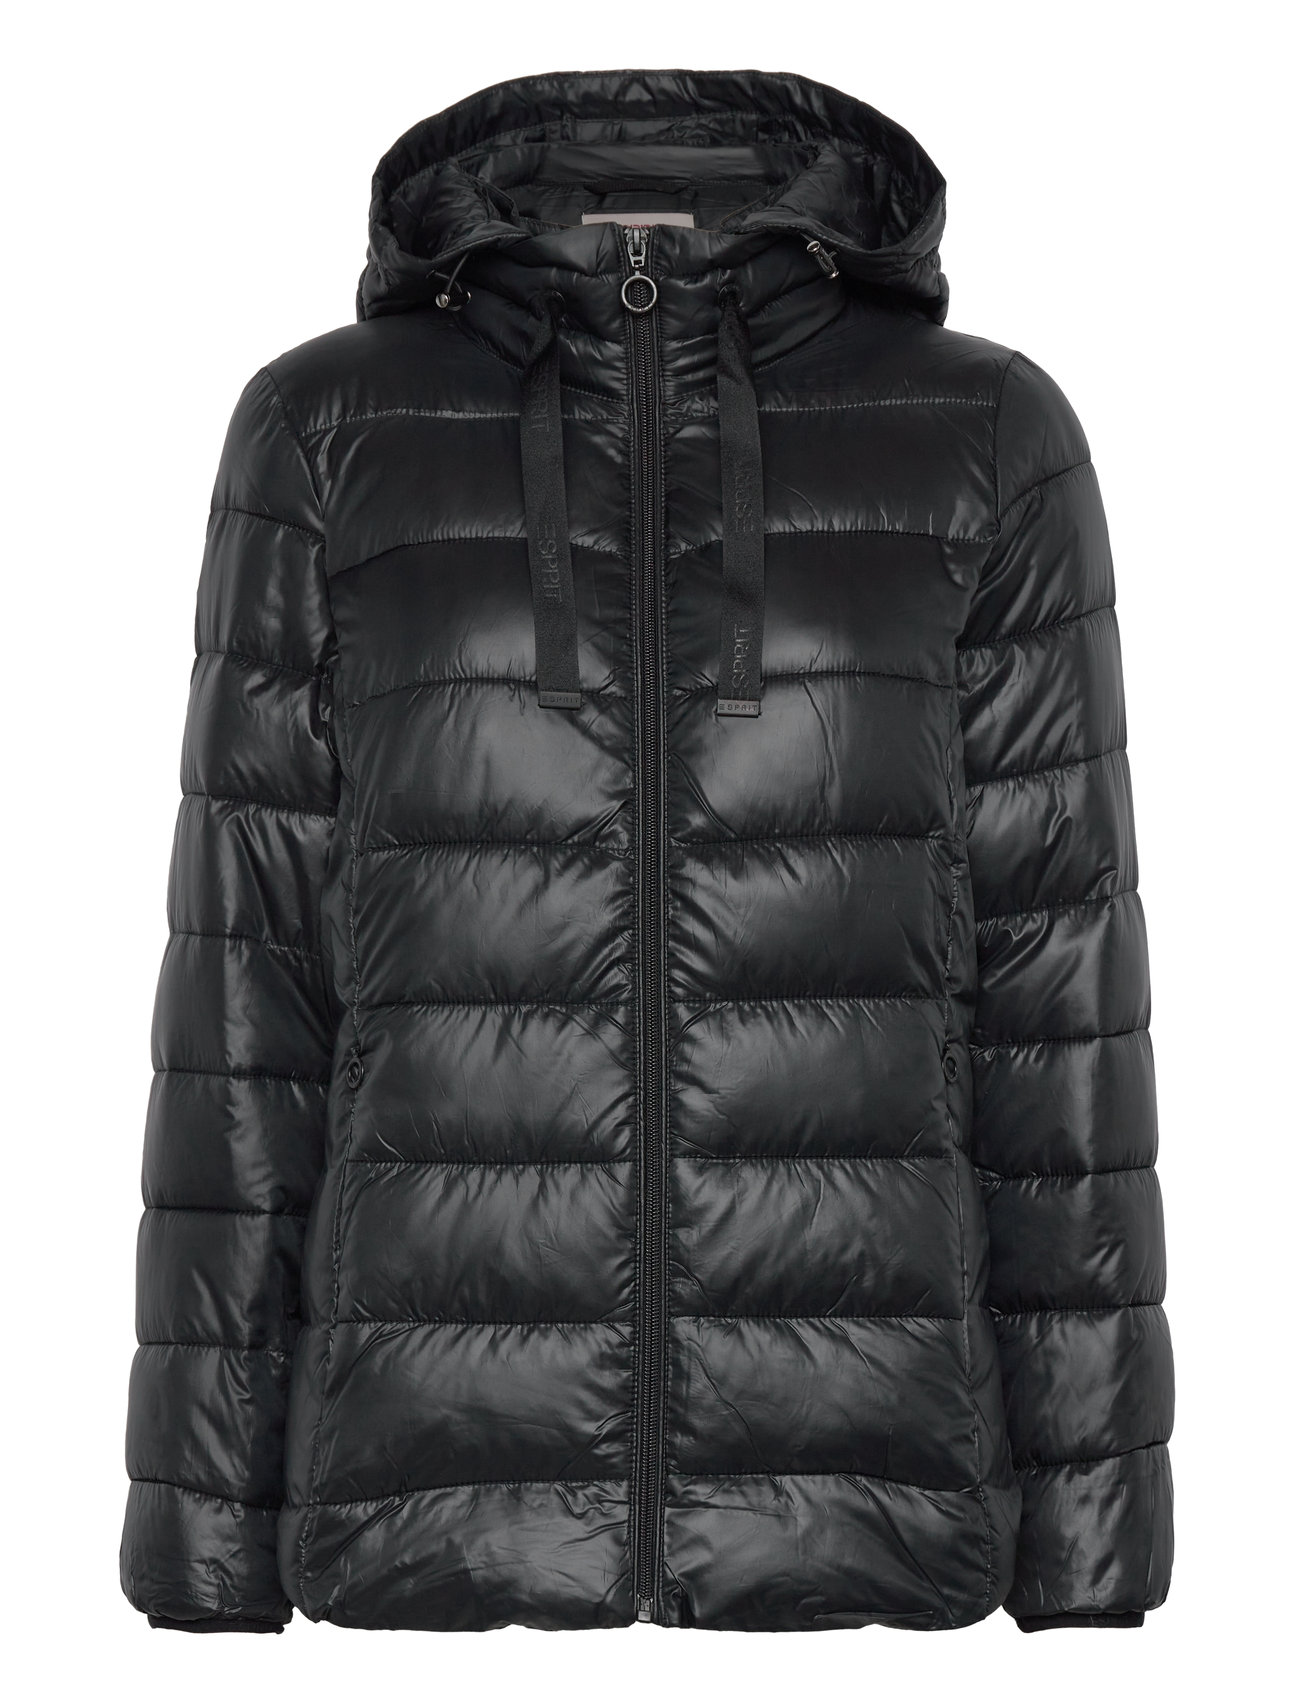 Esprit Casual Jackets Outdoor Woven - 674 kr. Køb Forede jakker fra Esprit Casual online på Boozt.com. Hurtig & nem retur